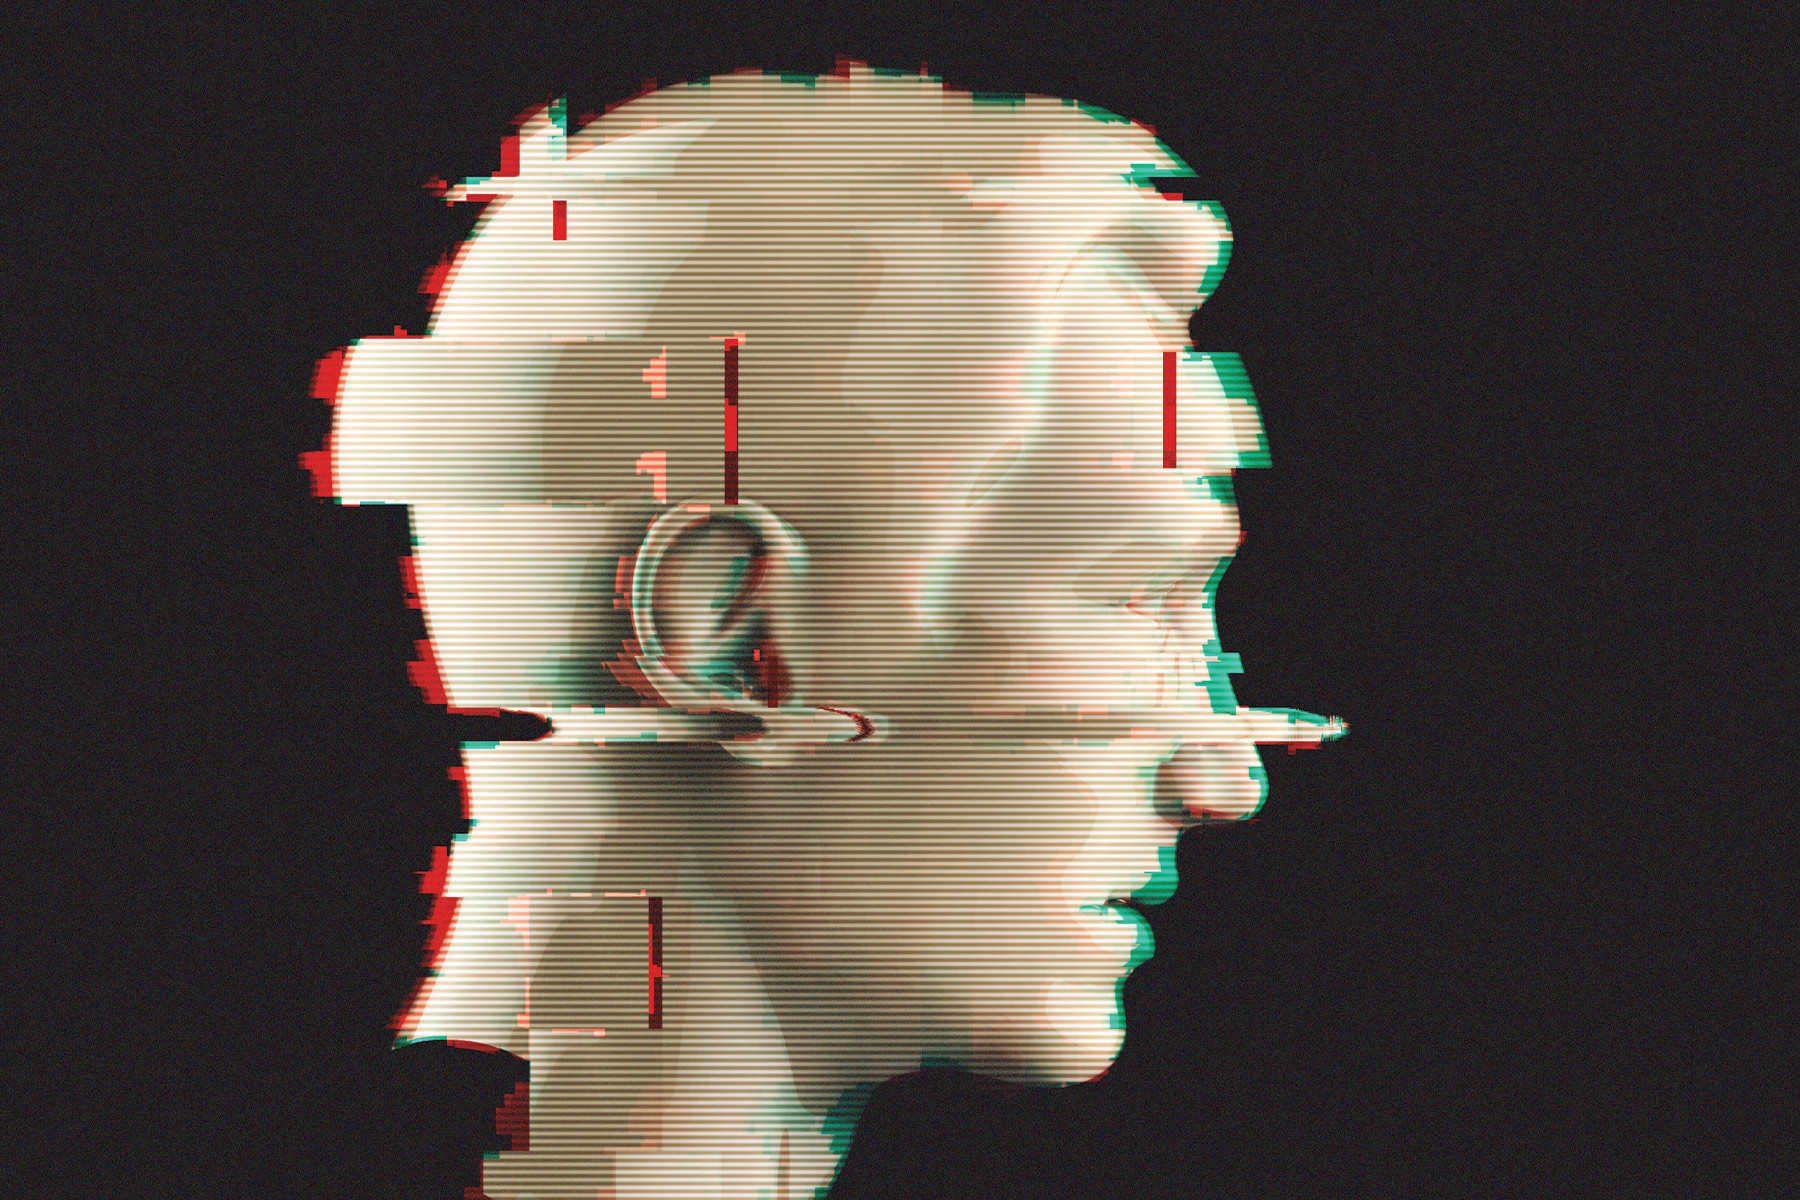 Digital glitch picture of human